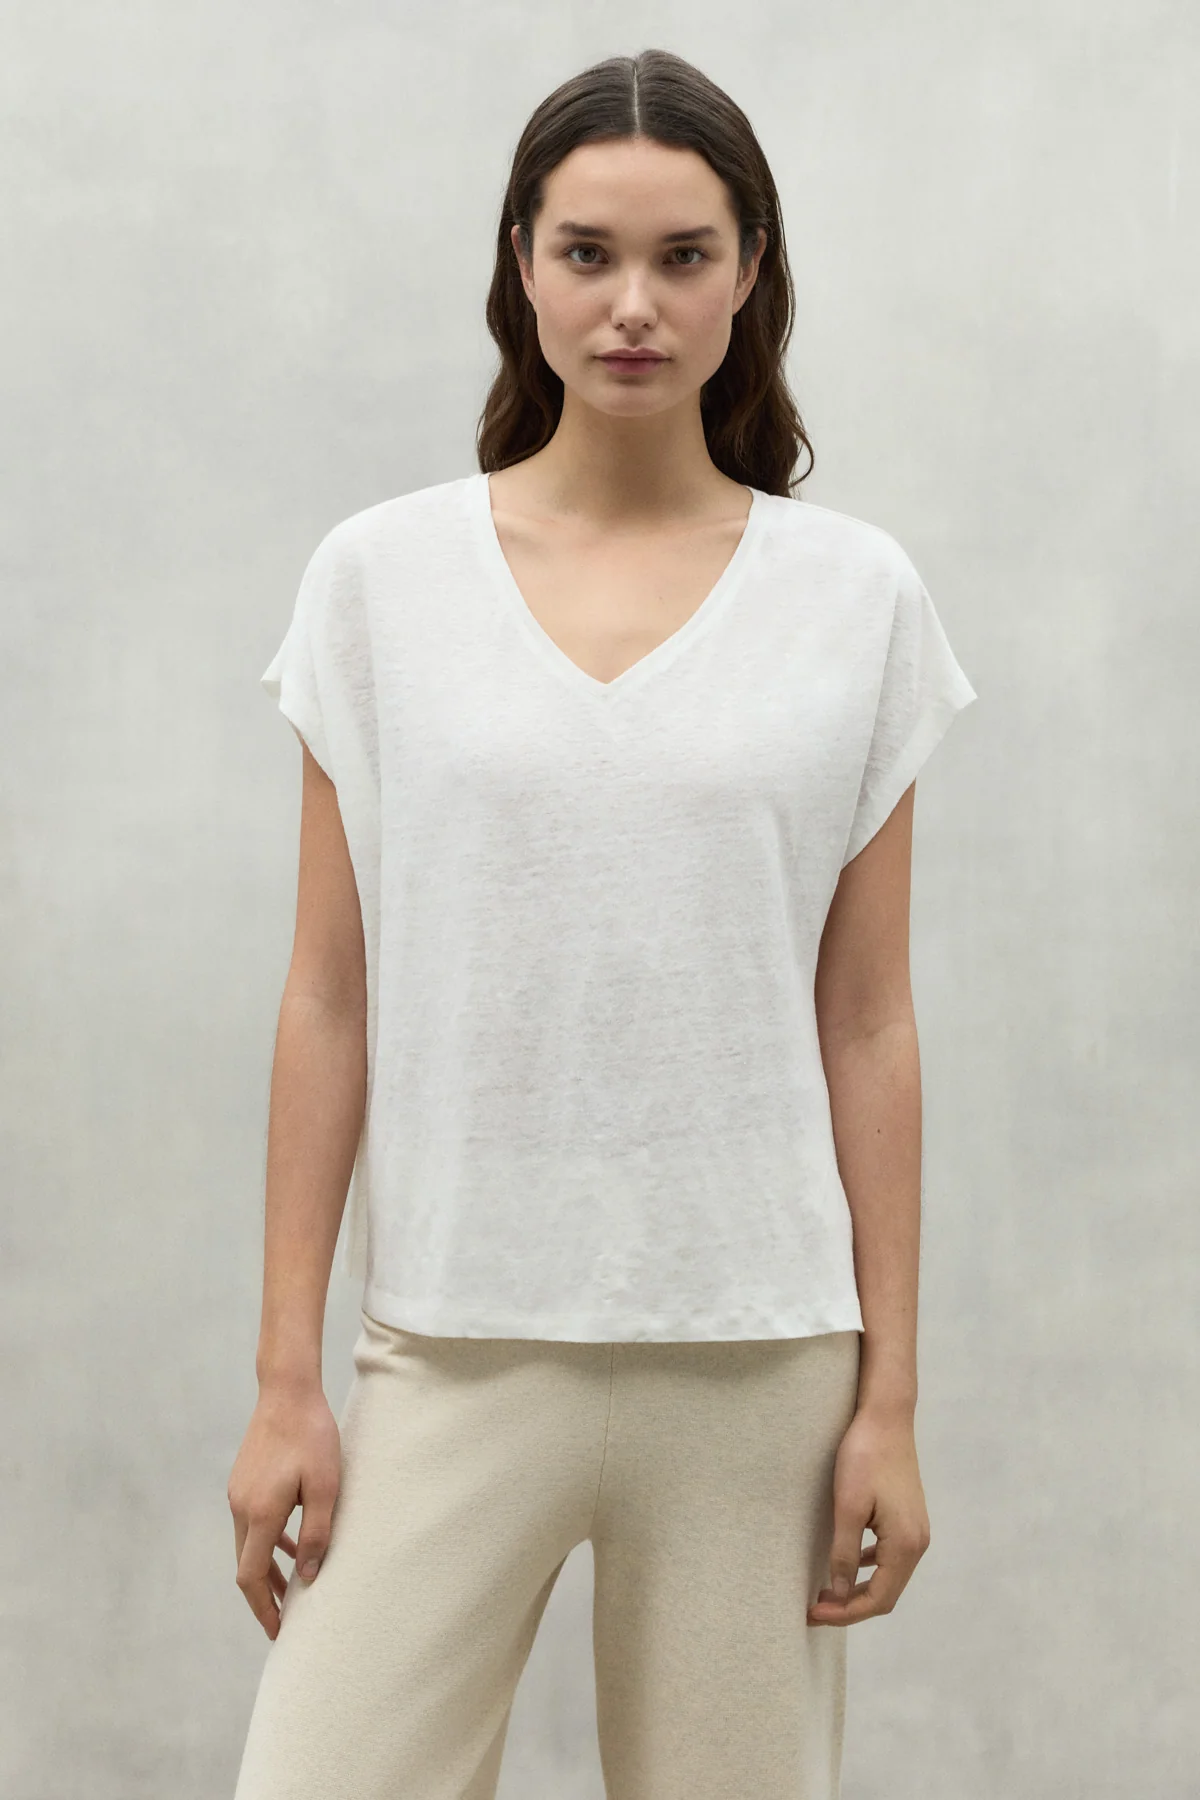 ECOALF camiseta en lino manga corta color blanco y escote pico